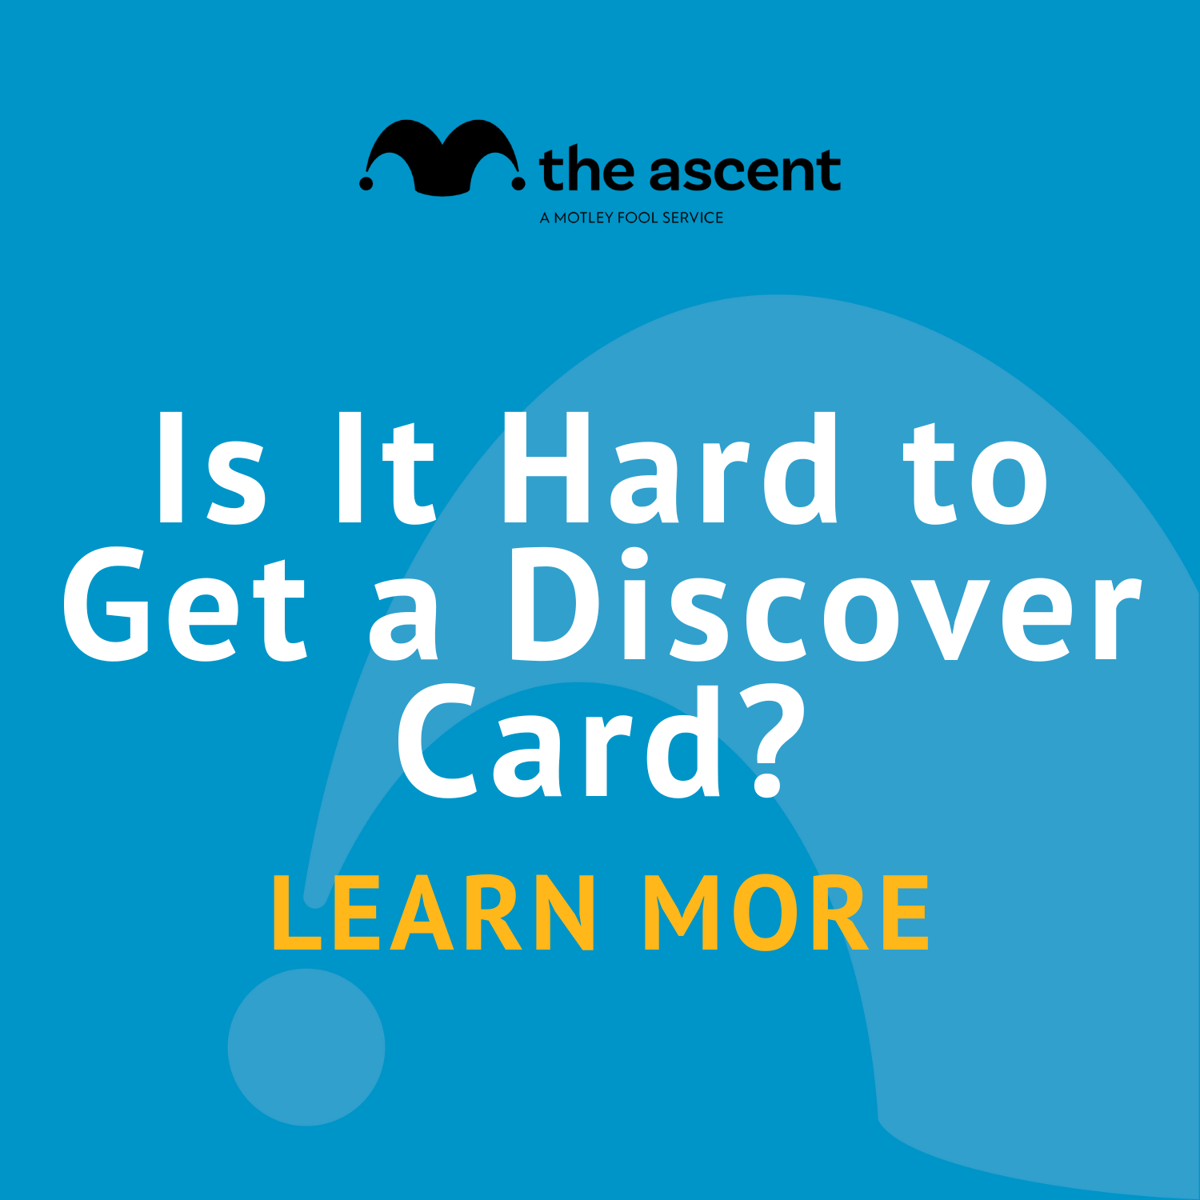 Cât de greu este să descoperi cardul de a obține?